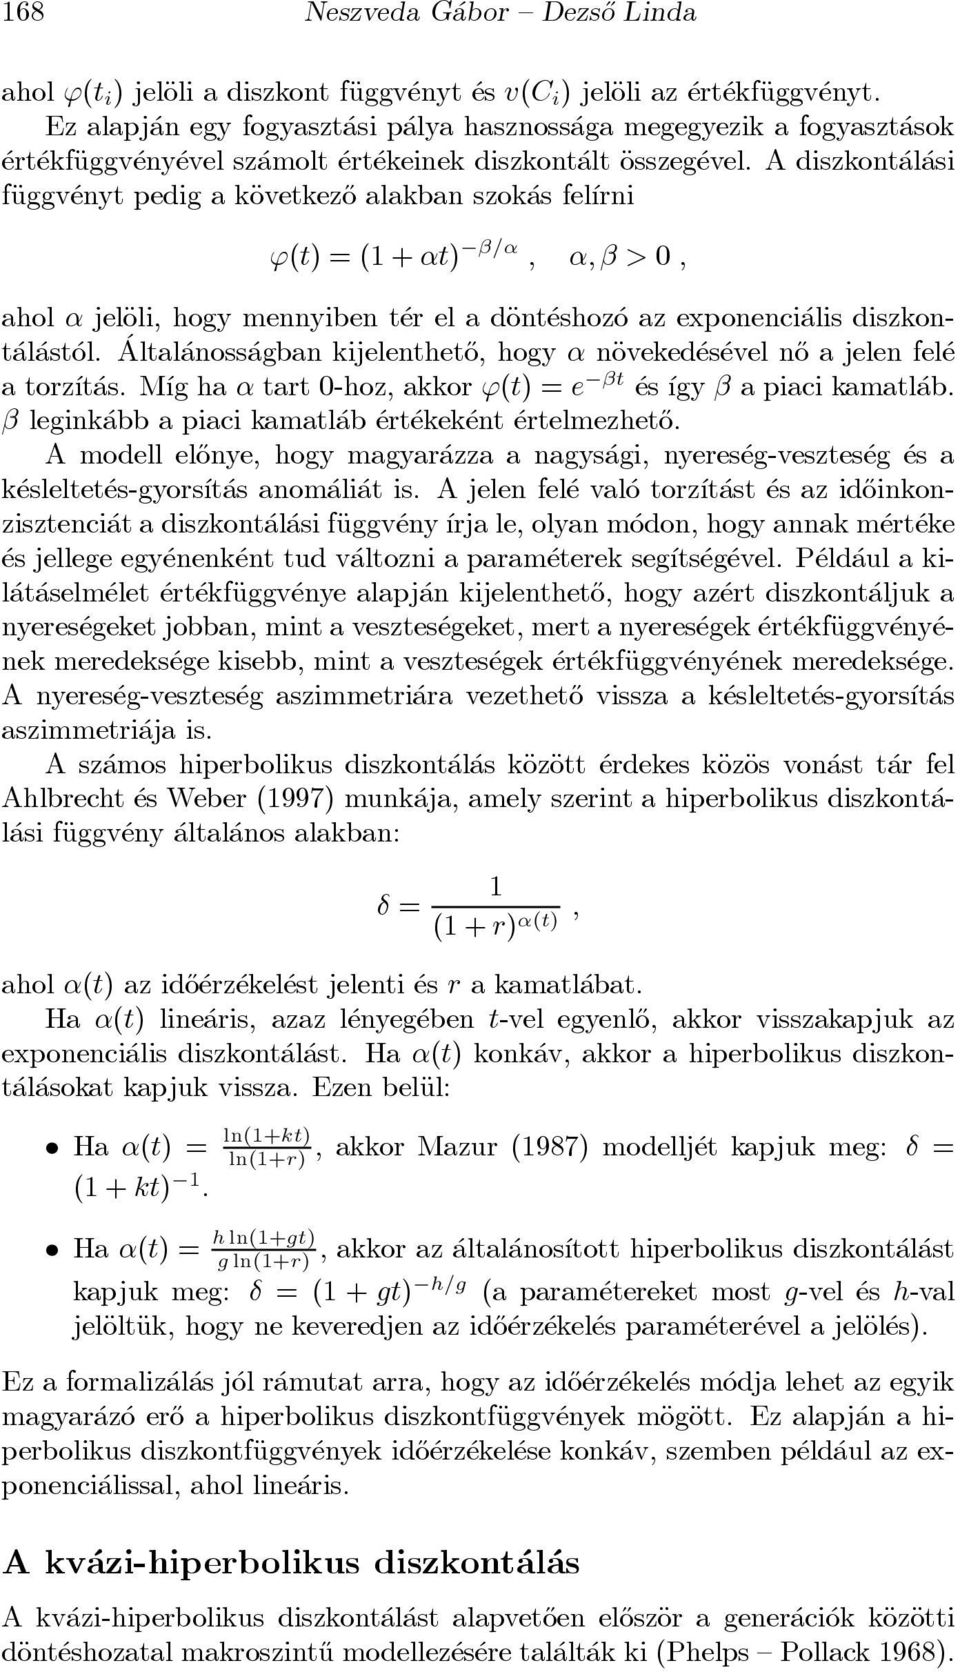 A diszkont al asi fäuggv enyt pedig a käovetkez}o alakban szok as fel ³rni '(t) = (1 + t) = ; ; > 0 ; ahol jeläoli, hogy mennyiben t er el a däont eshoz o az exponenci alis diszkont al ast ol.